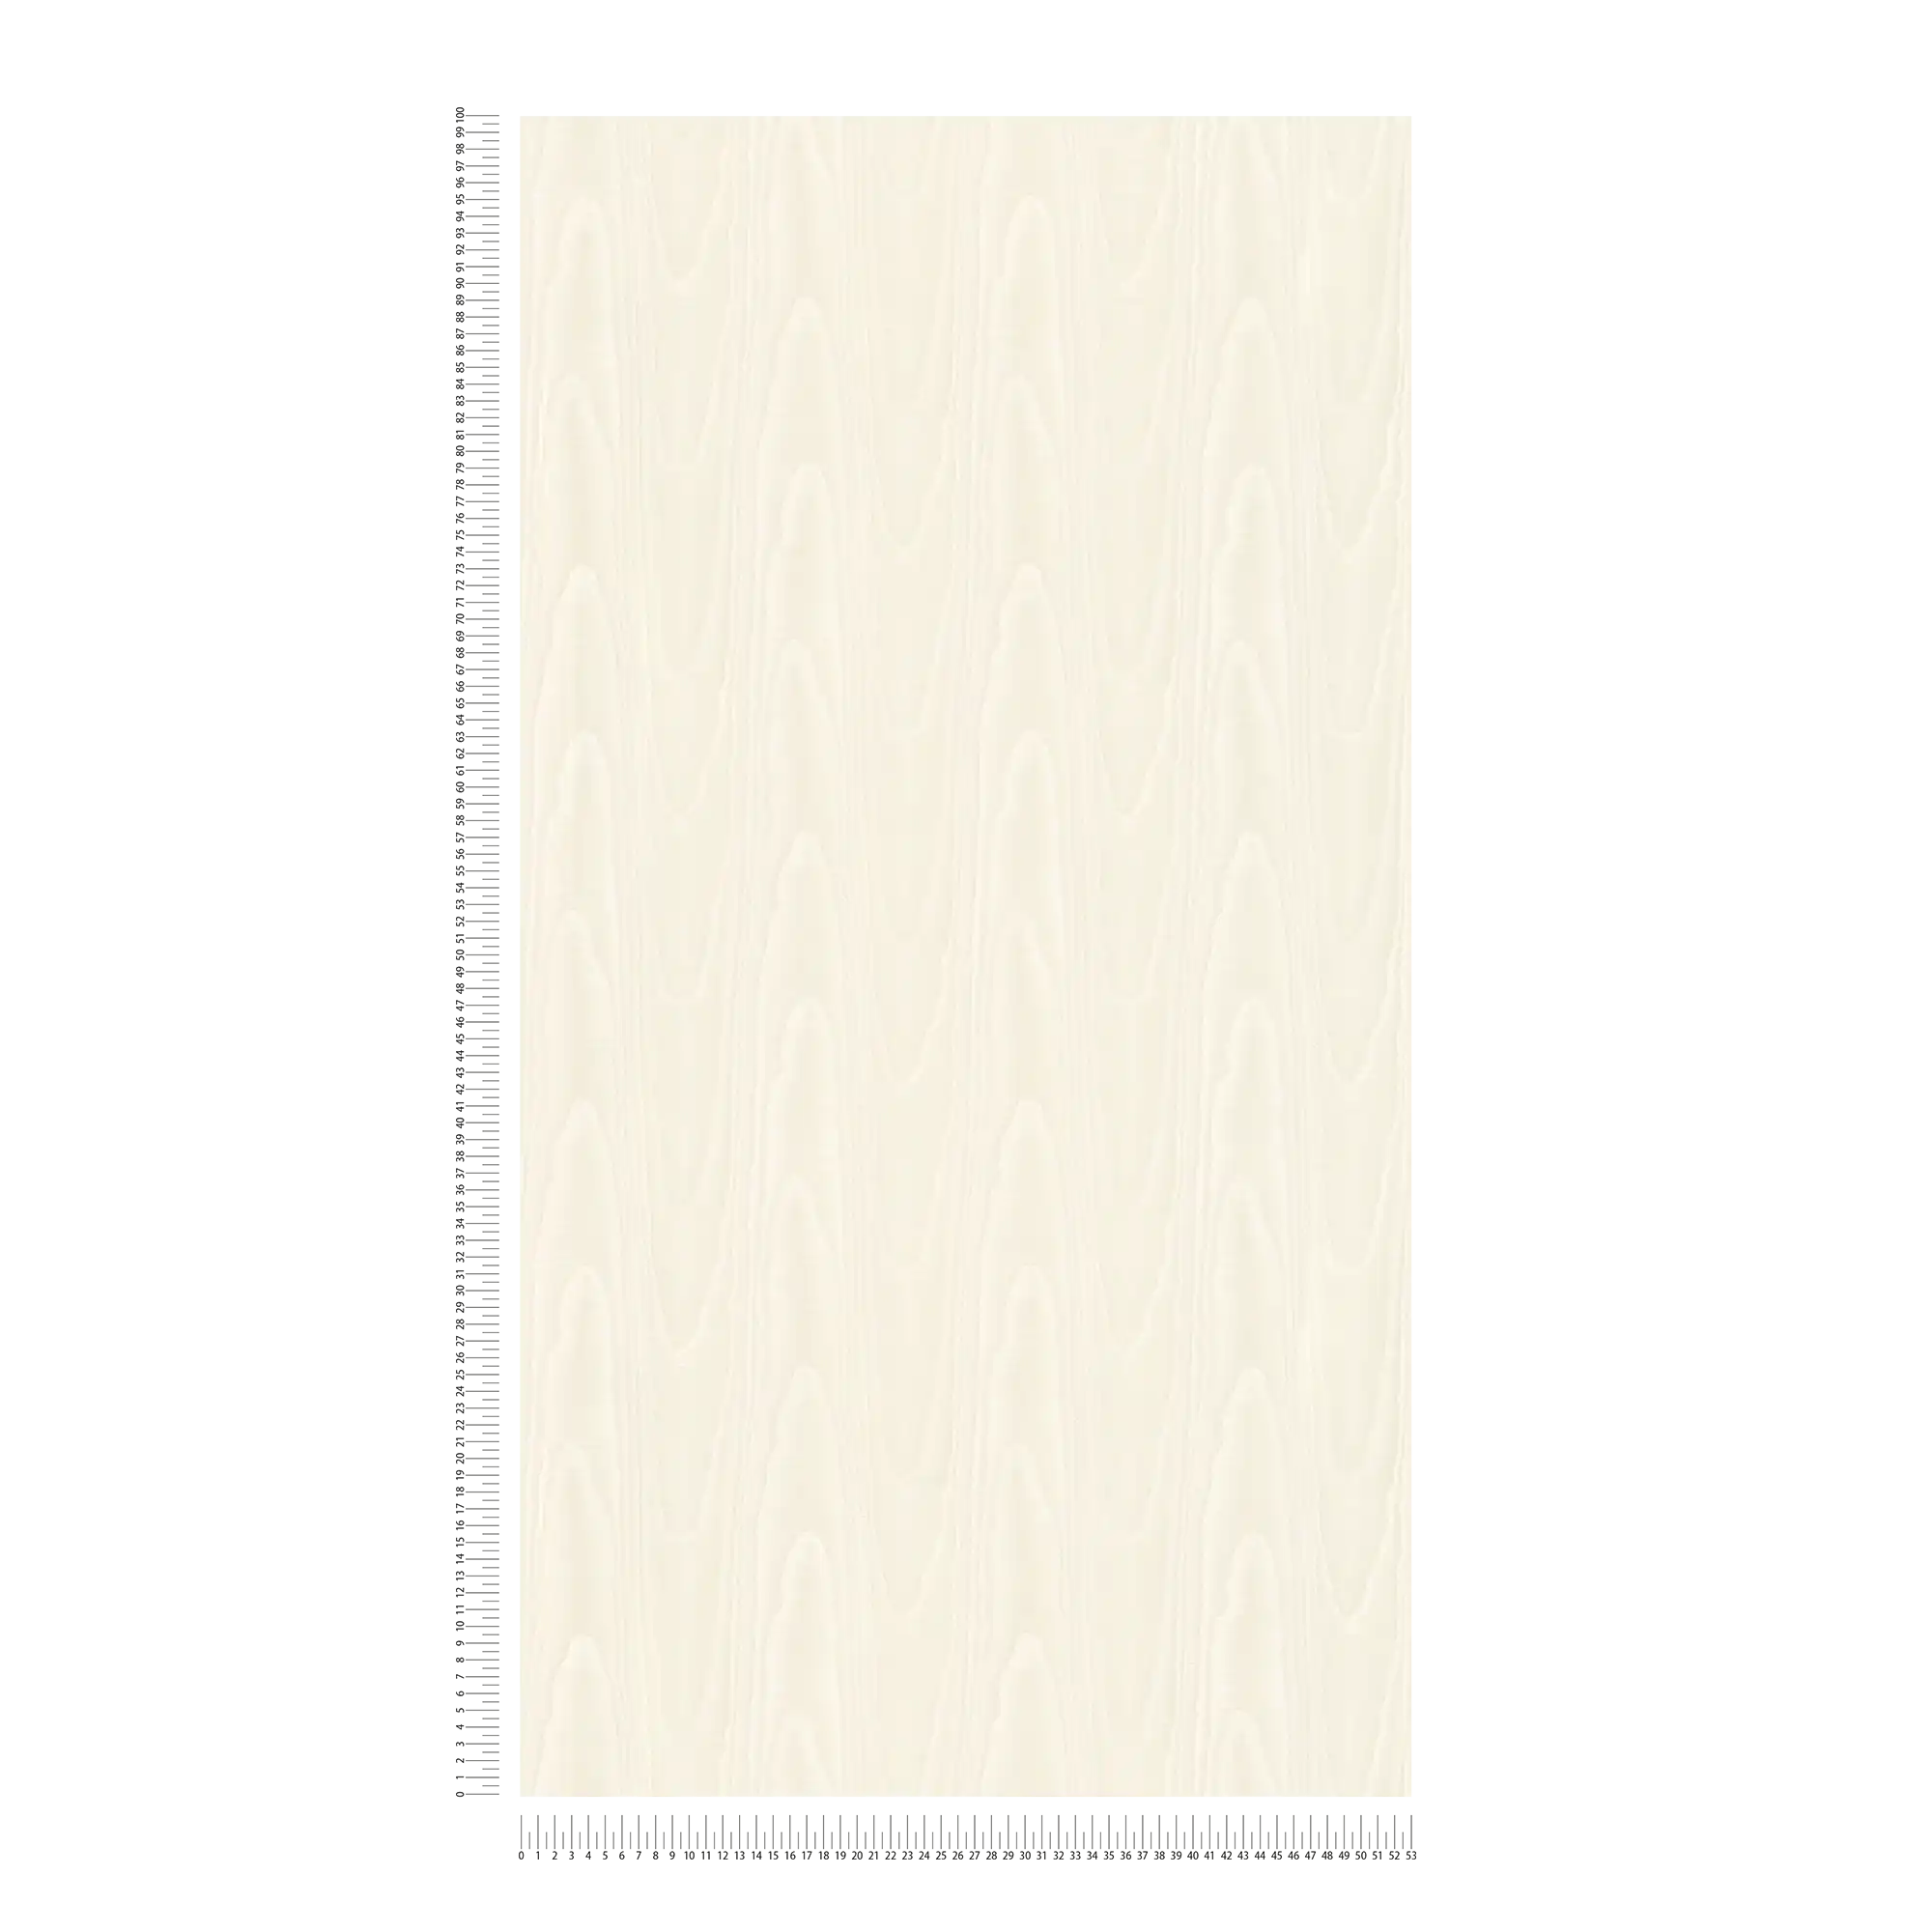             Carta da parati effetto tessuto crema con effetto moiré di seta
        